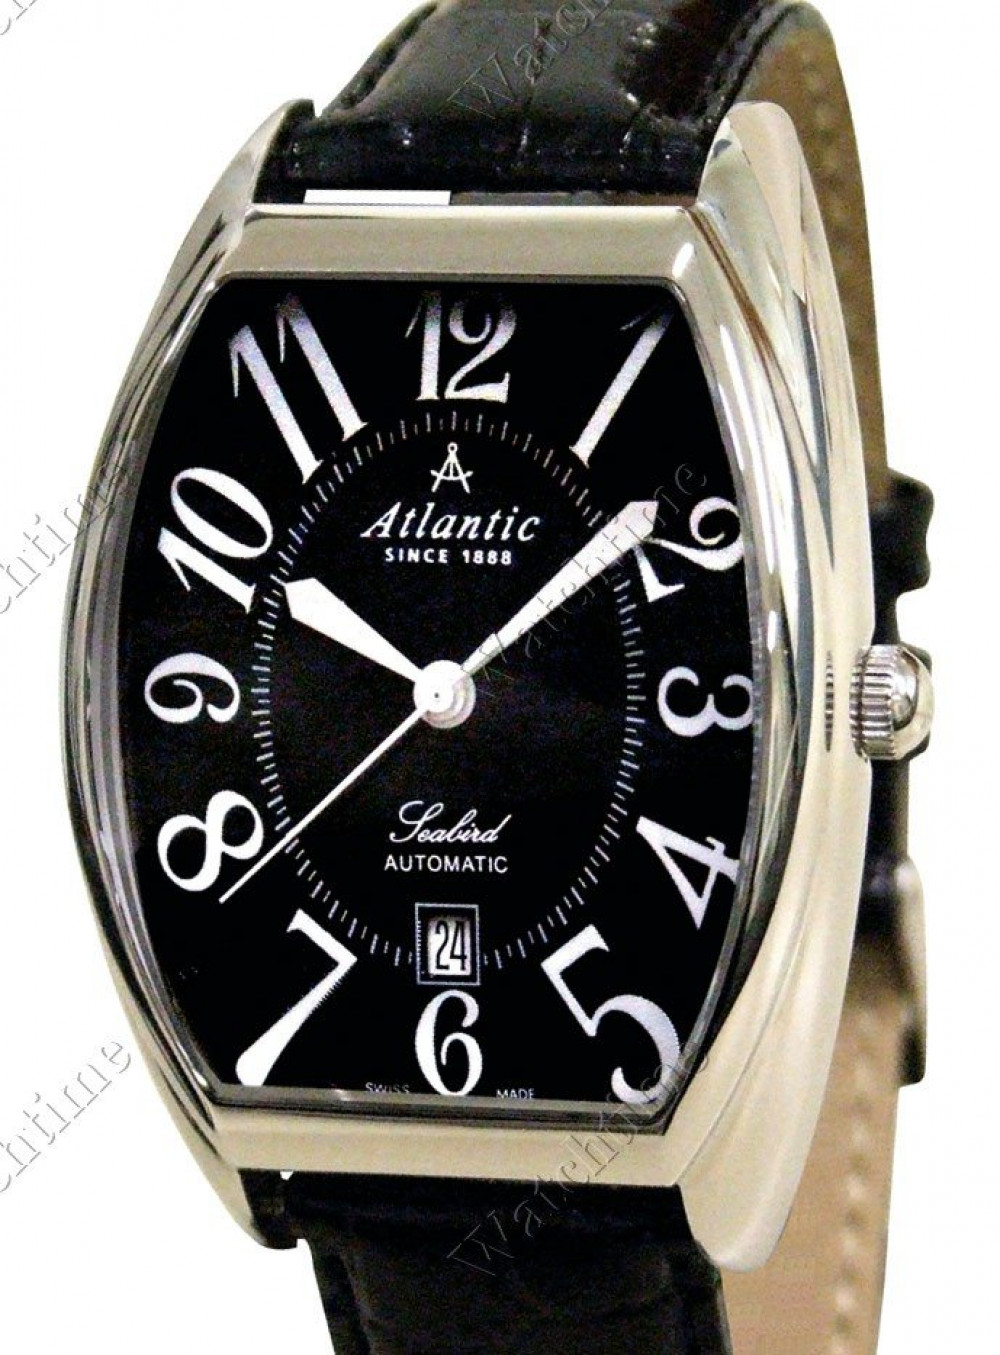 Zegarek firmy Atlantic, model Seabird -  Long Tonneau